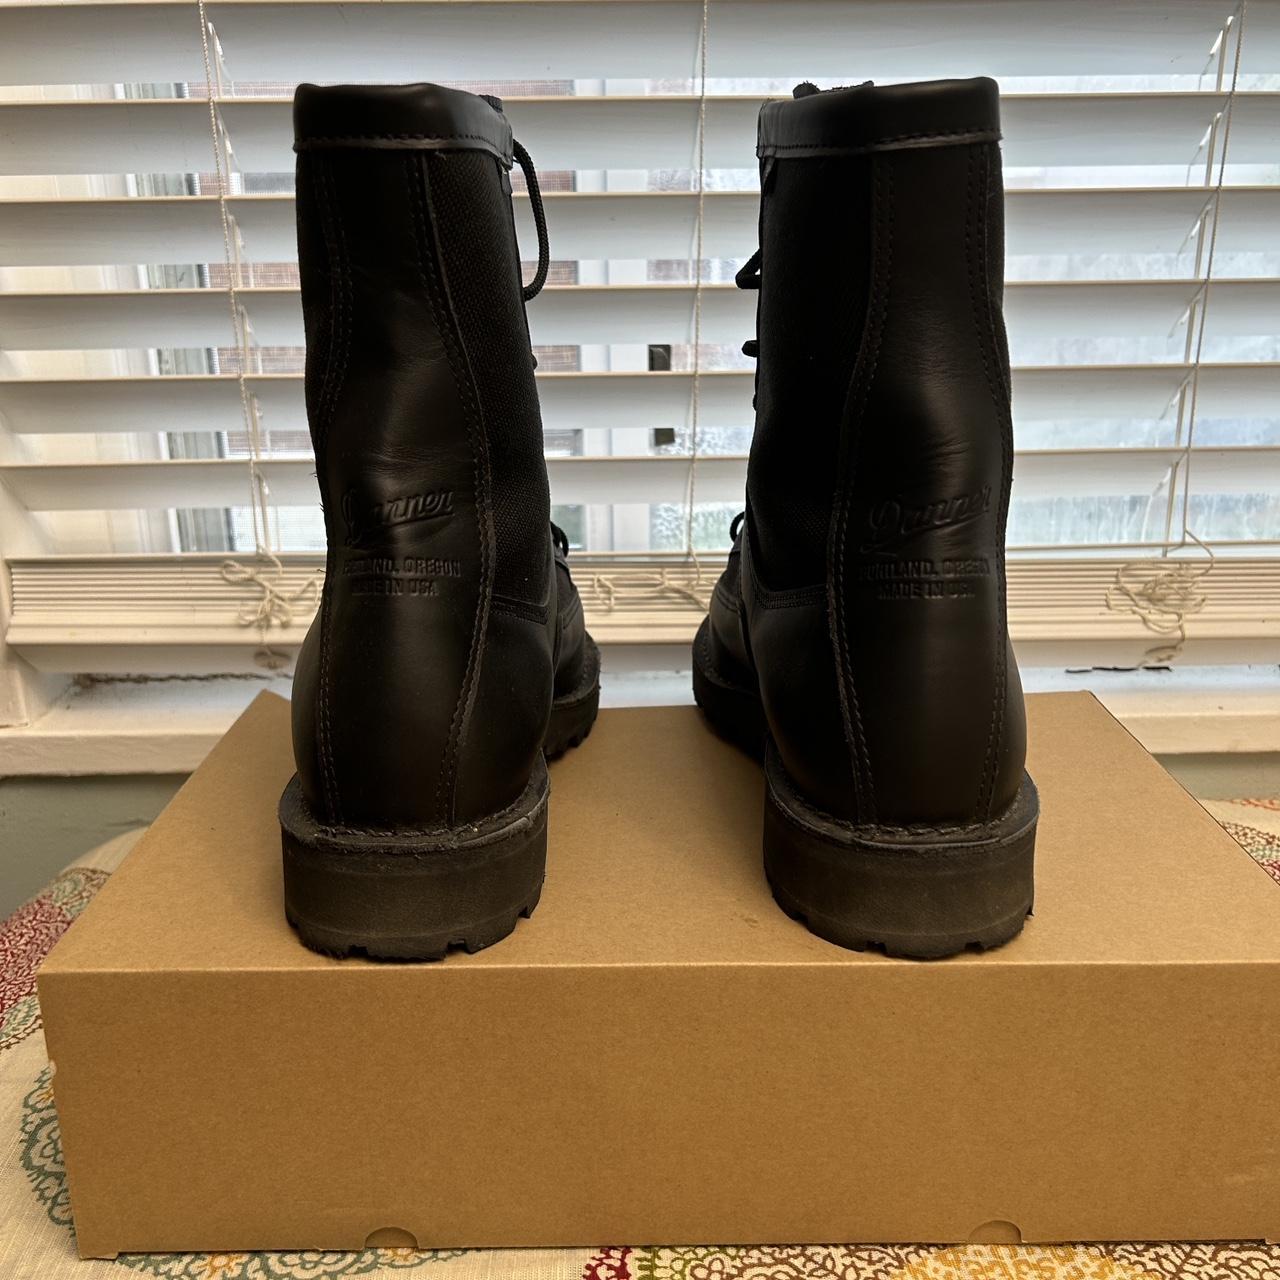 Danner Men's Black Boots | Depop